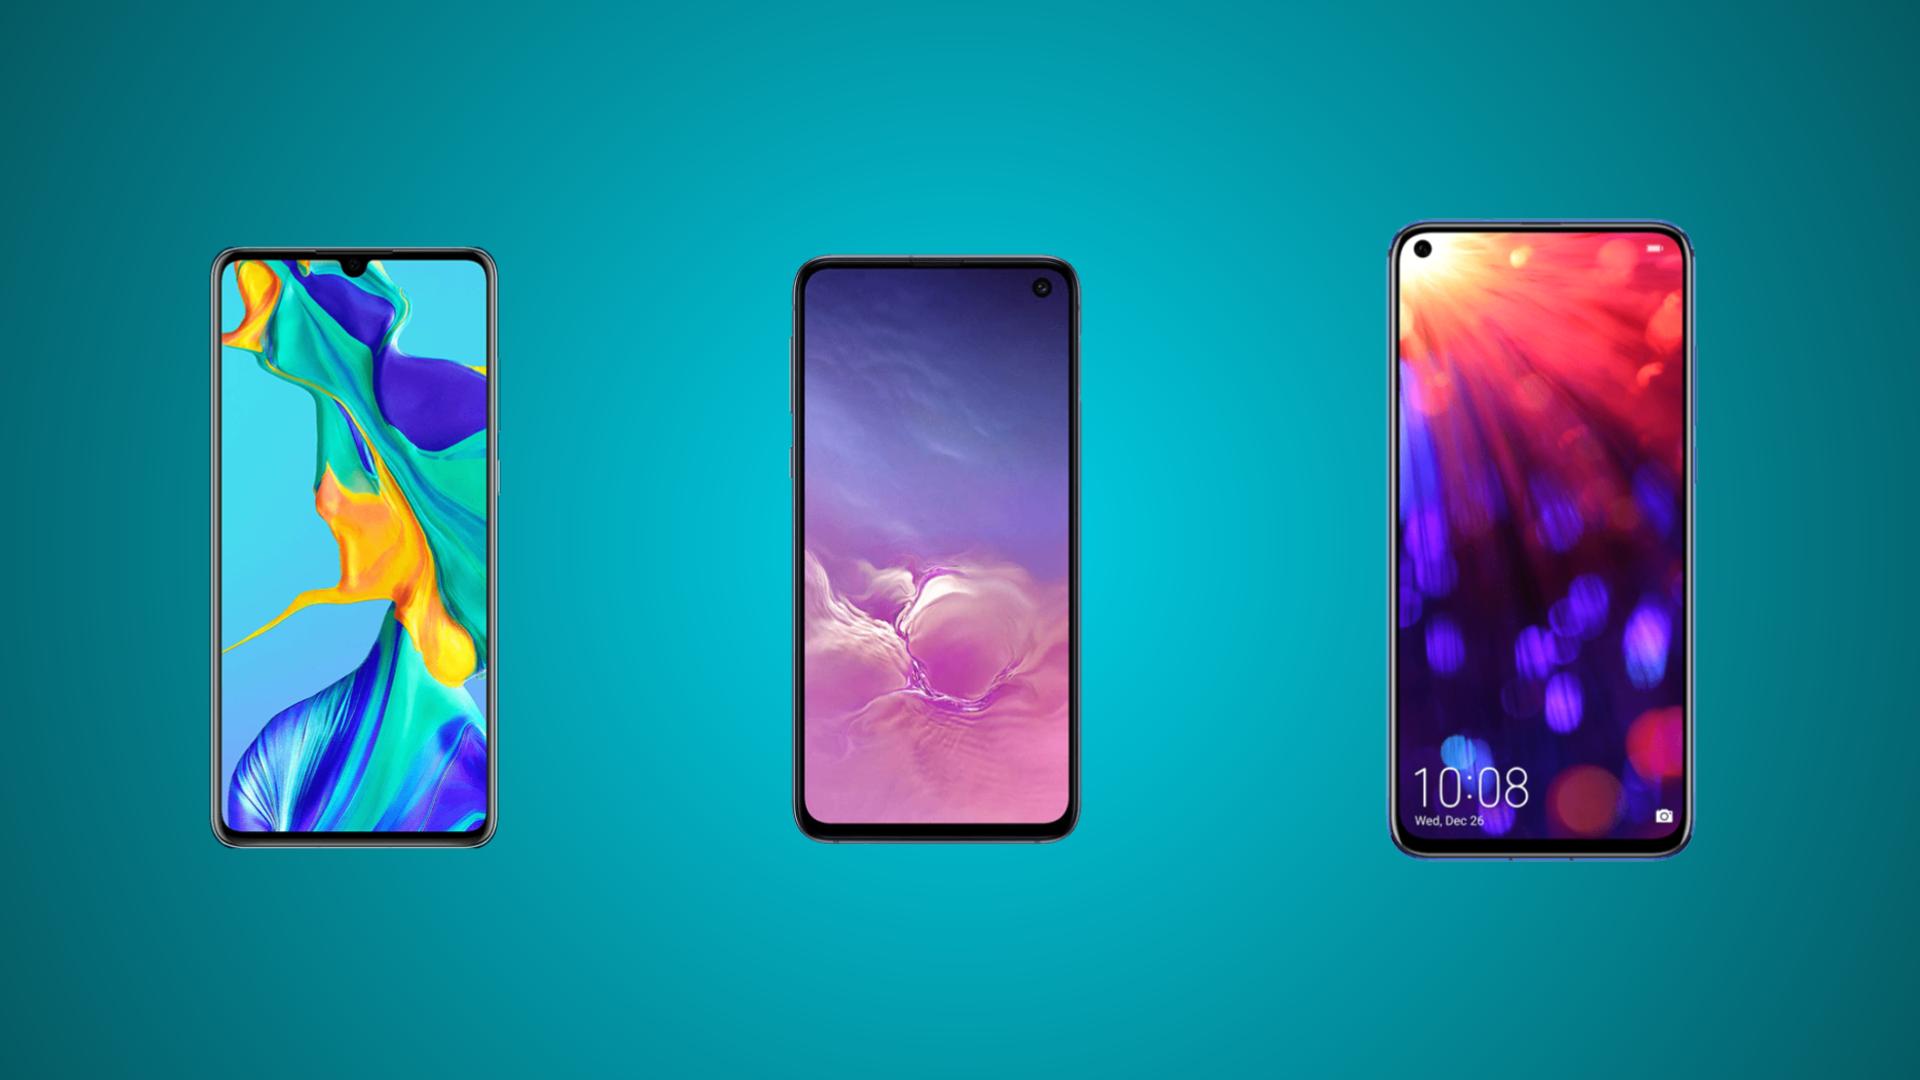 Rentrée 2019 : promotions sur les smartphones Honor, Huawei et Samsung chez Fnac Darty - FrAndroid